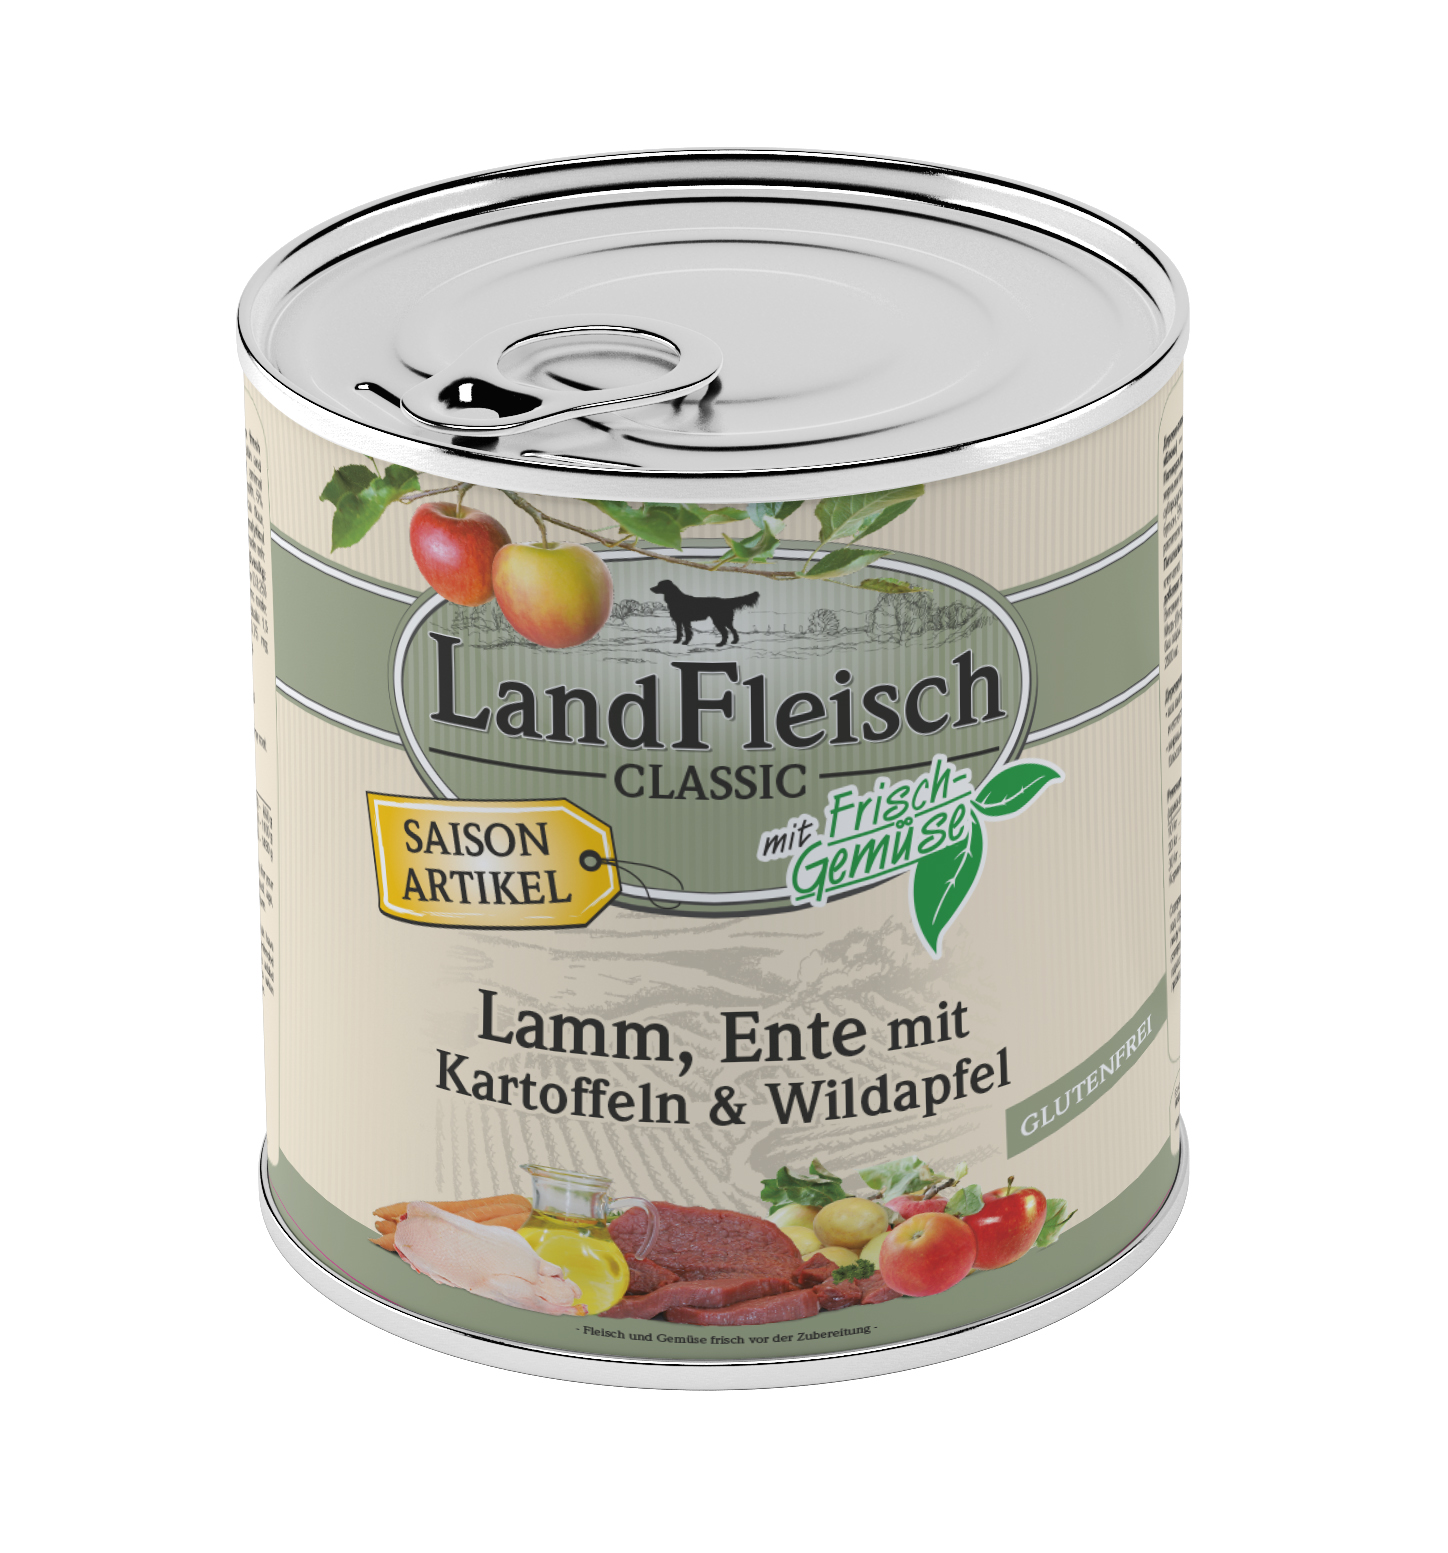 LandFleisch Classic Lamm & Ente & Kartoffeln & Wildapfel 800g